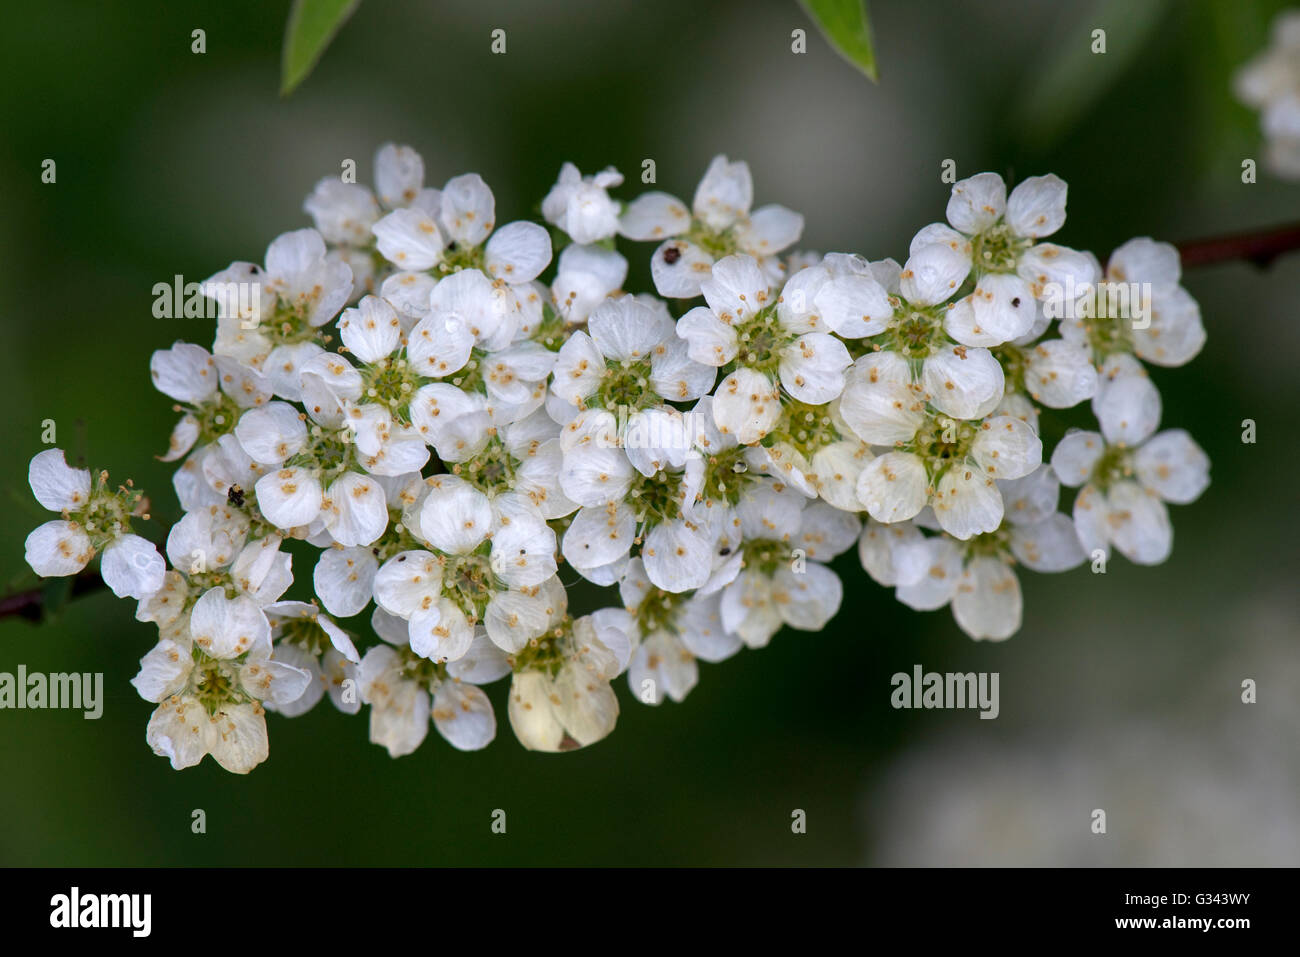 Ghirlanda nuziale o schiuma di maggio, Spirea 'Arguta', grappoli di fiori bianchi in primavera, Berkshire, può Foto Stock